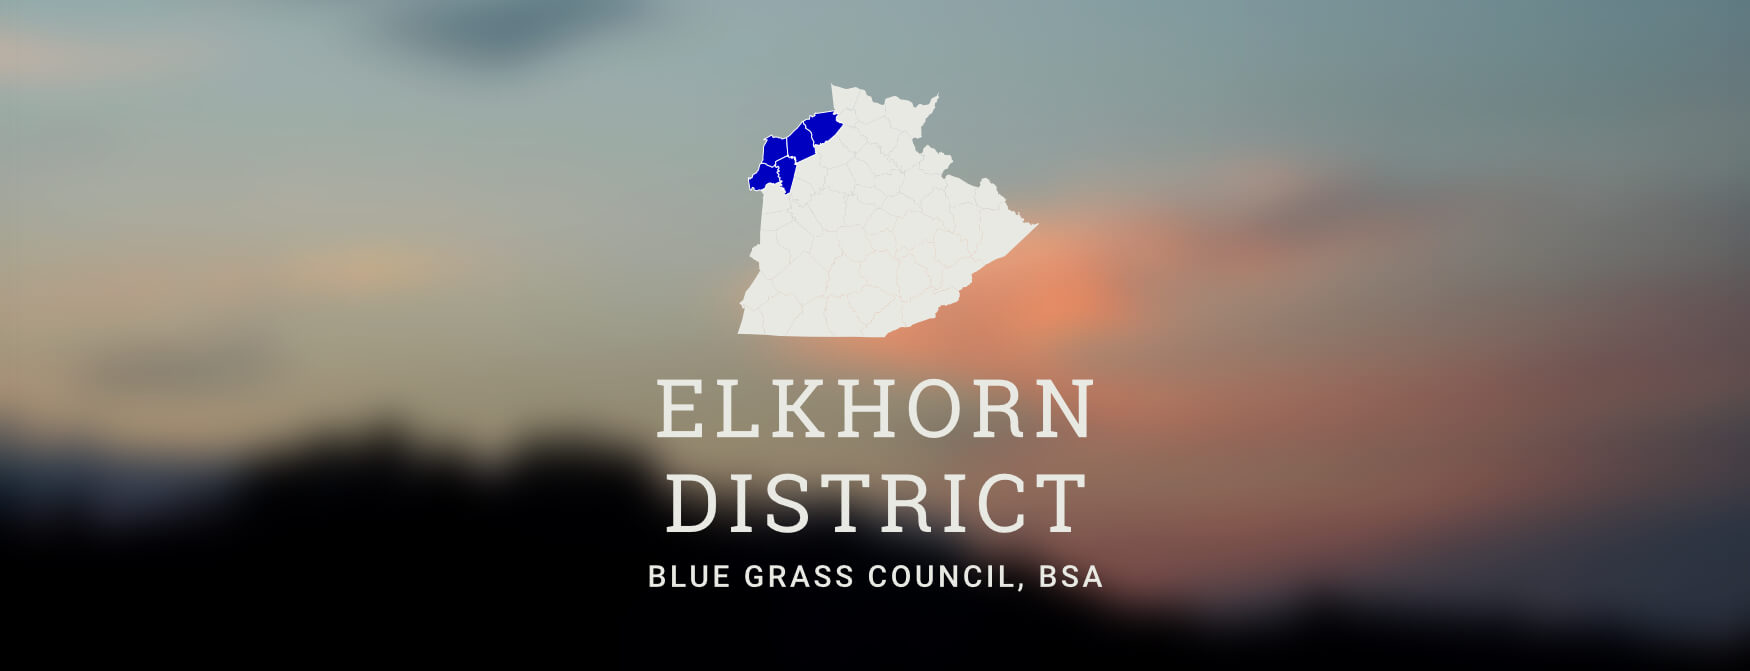 Elkhorn District